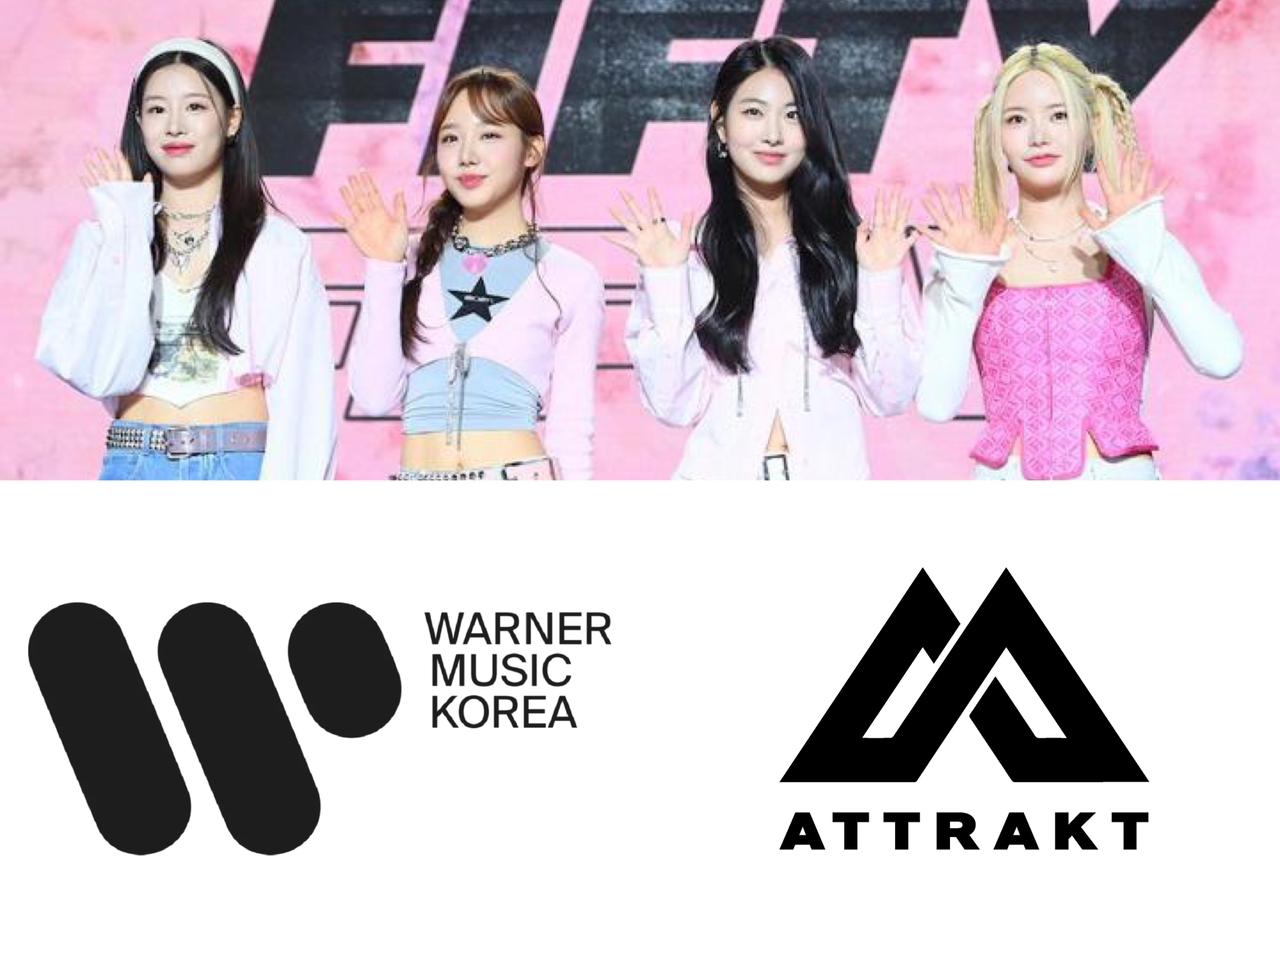 وكالة ATTRAKT تدّعي انَ Warner Music Korea هي "القوة الخارجية" التي حاولت اقناع FIFTY FIFTY بفسخ عقودهن